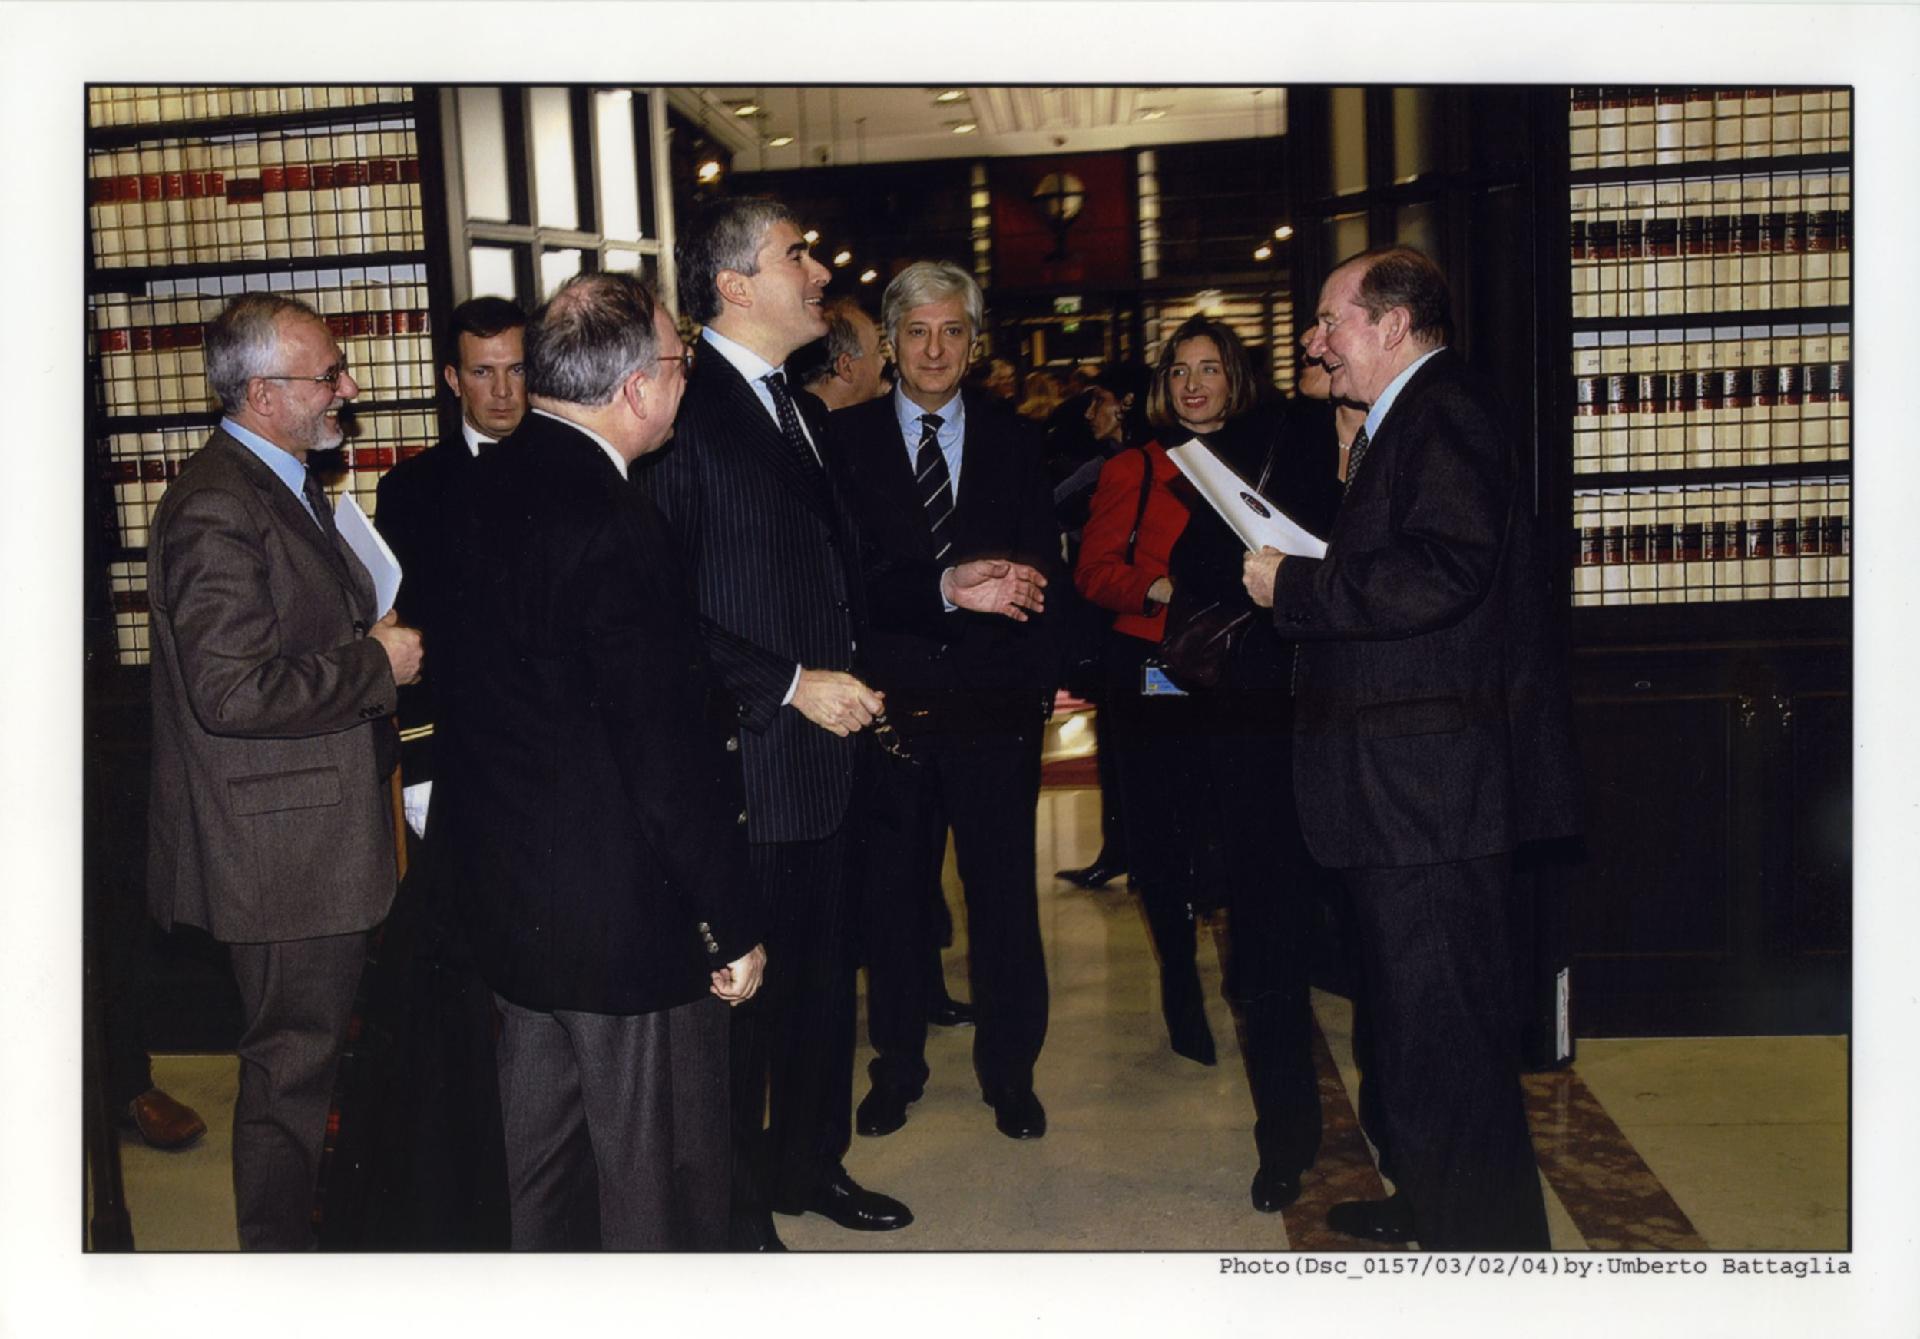 Gianni Bisiach con Pier Ferdinando Casini, Ugo Zampetti e altri alla Camera dei Deputati a Roma il 3 febbraio 2004 per la sua mostra sul viaggio di Kennedy a Roma